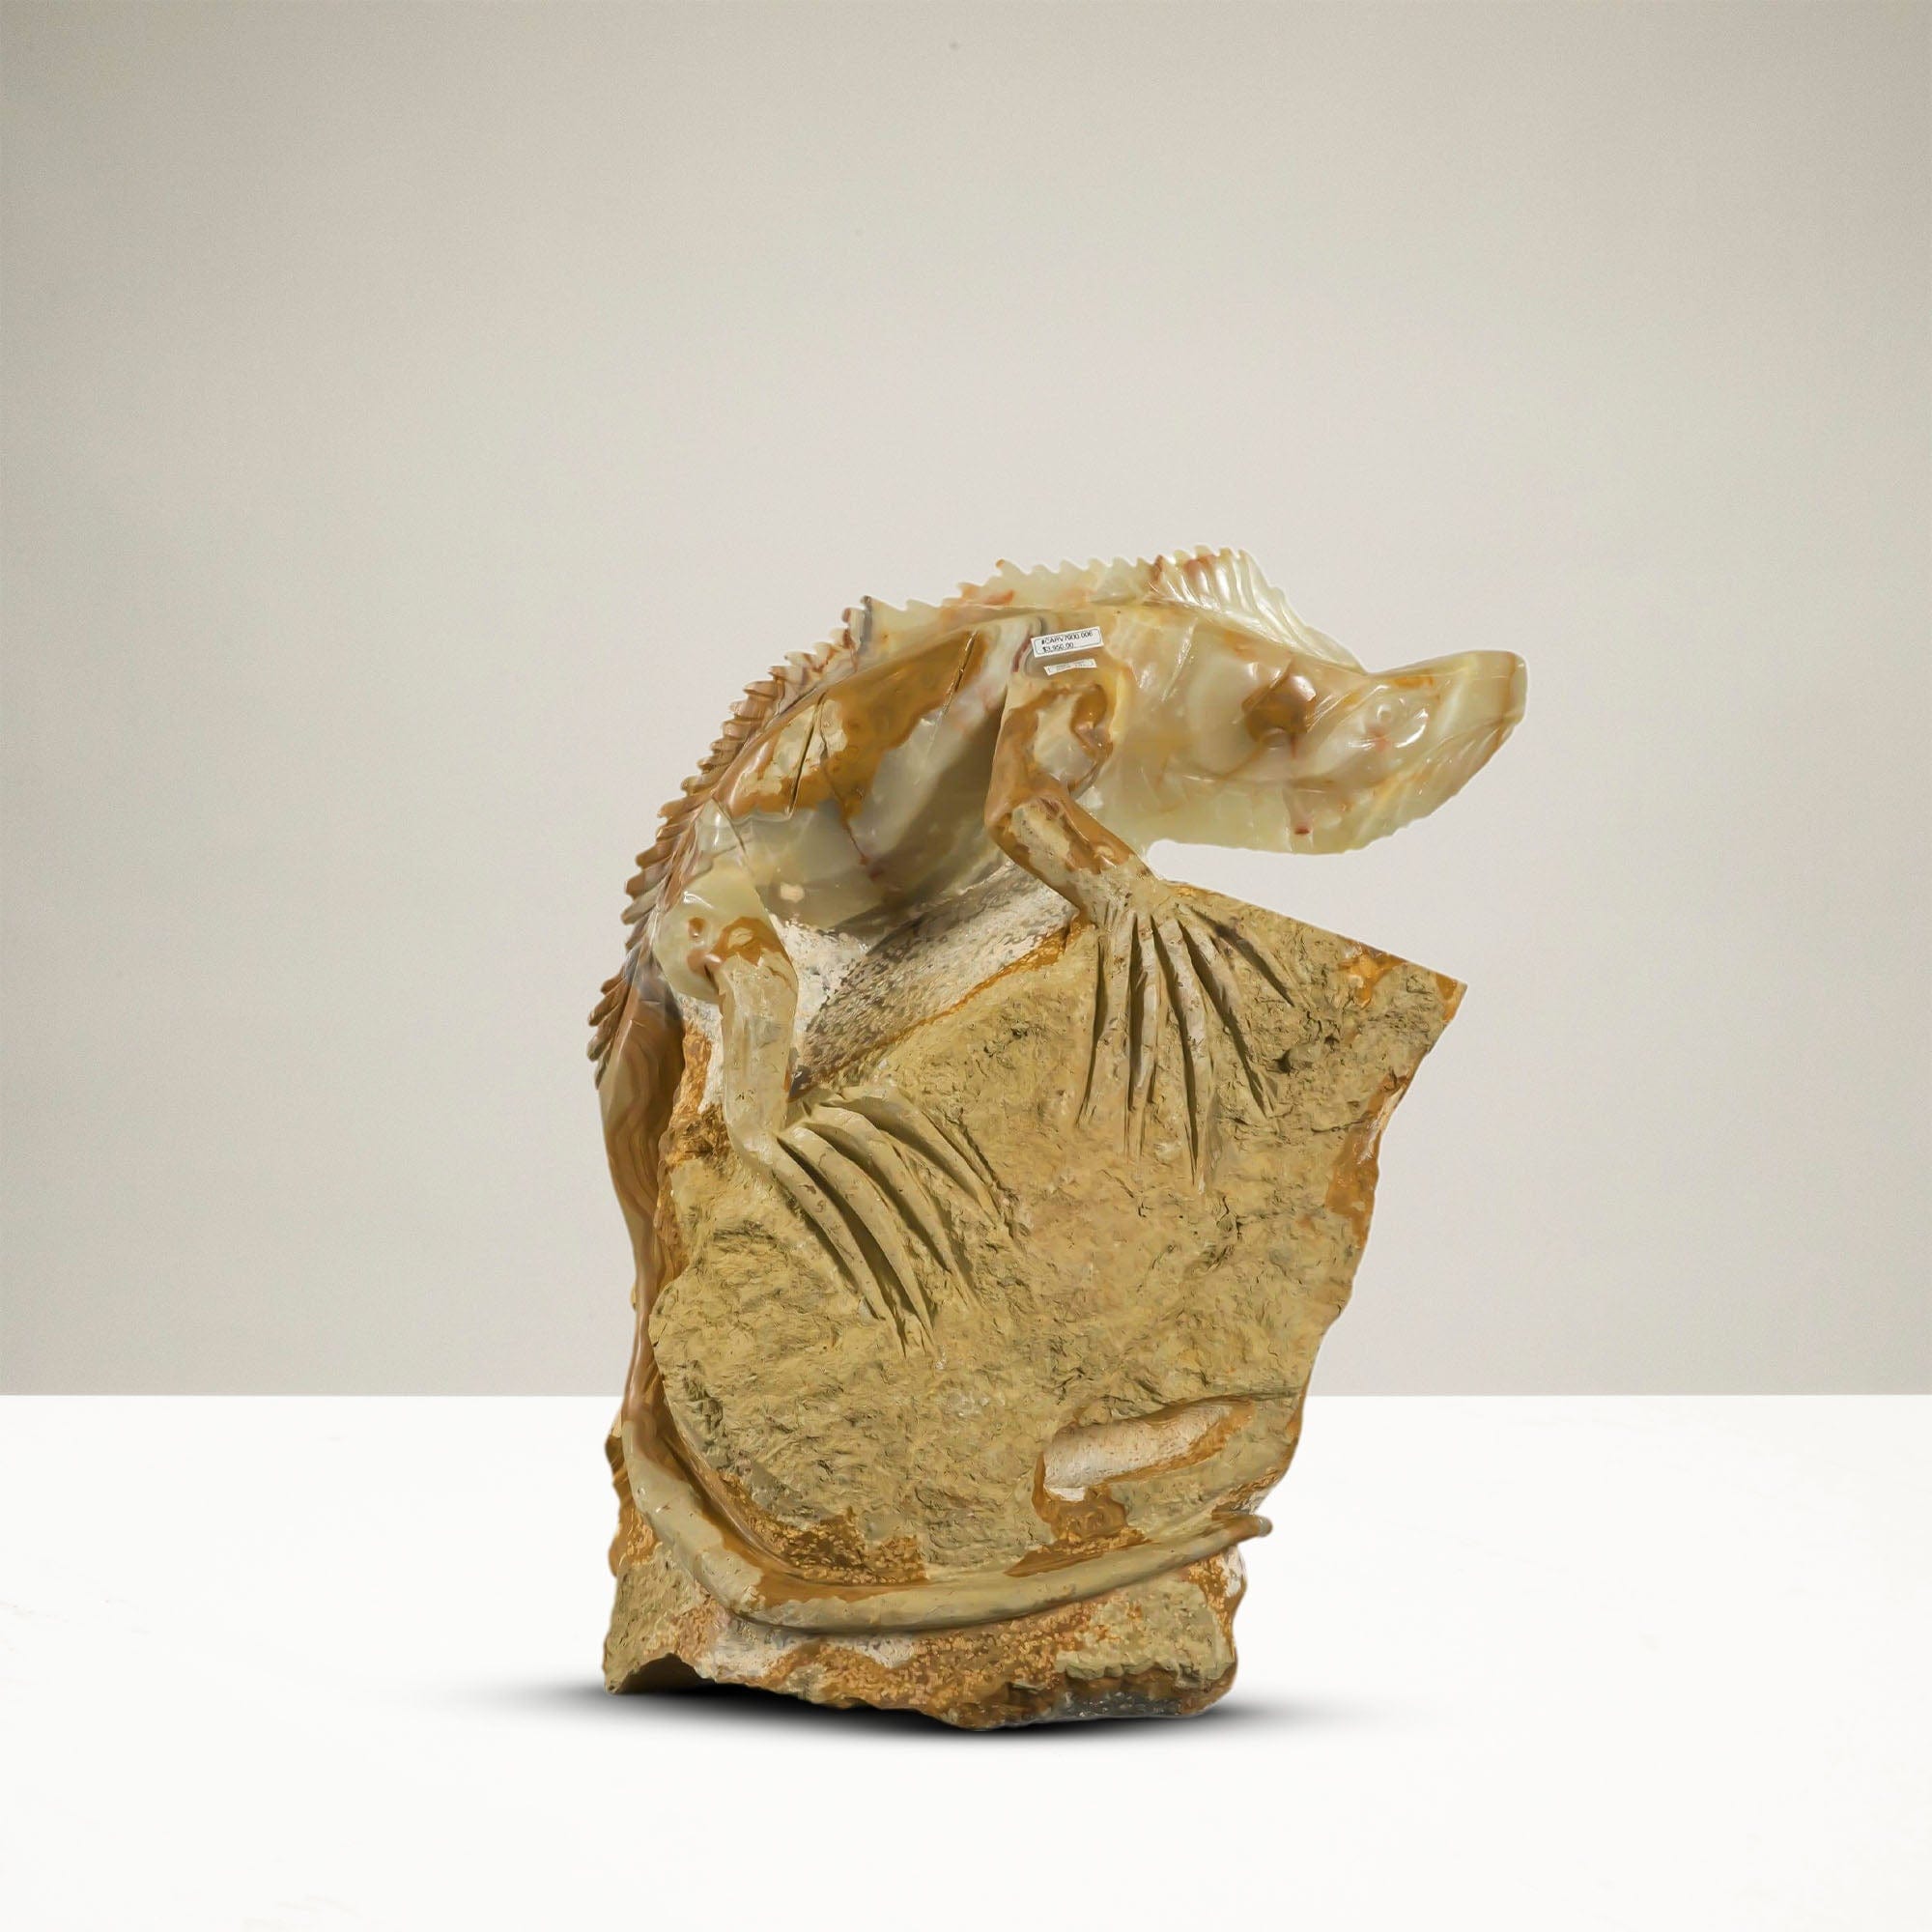 Kalifano Onyx Iguana Onyx Carving from Mexico - 355 lbs / 27" H CARV7900.006